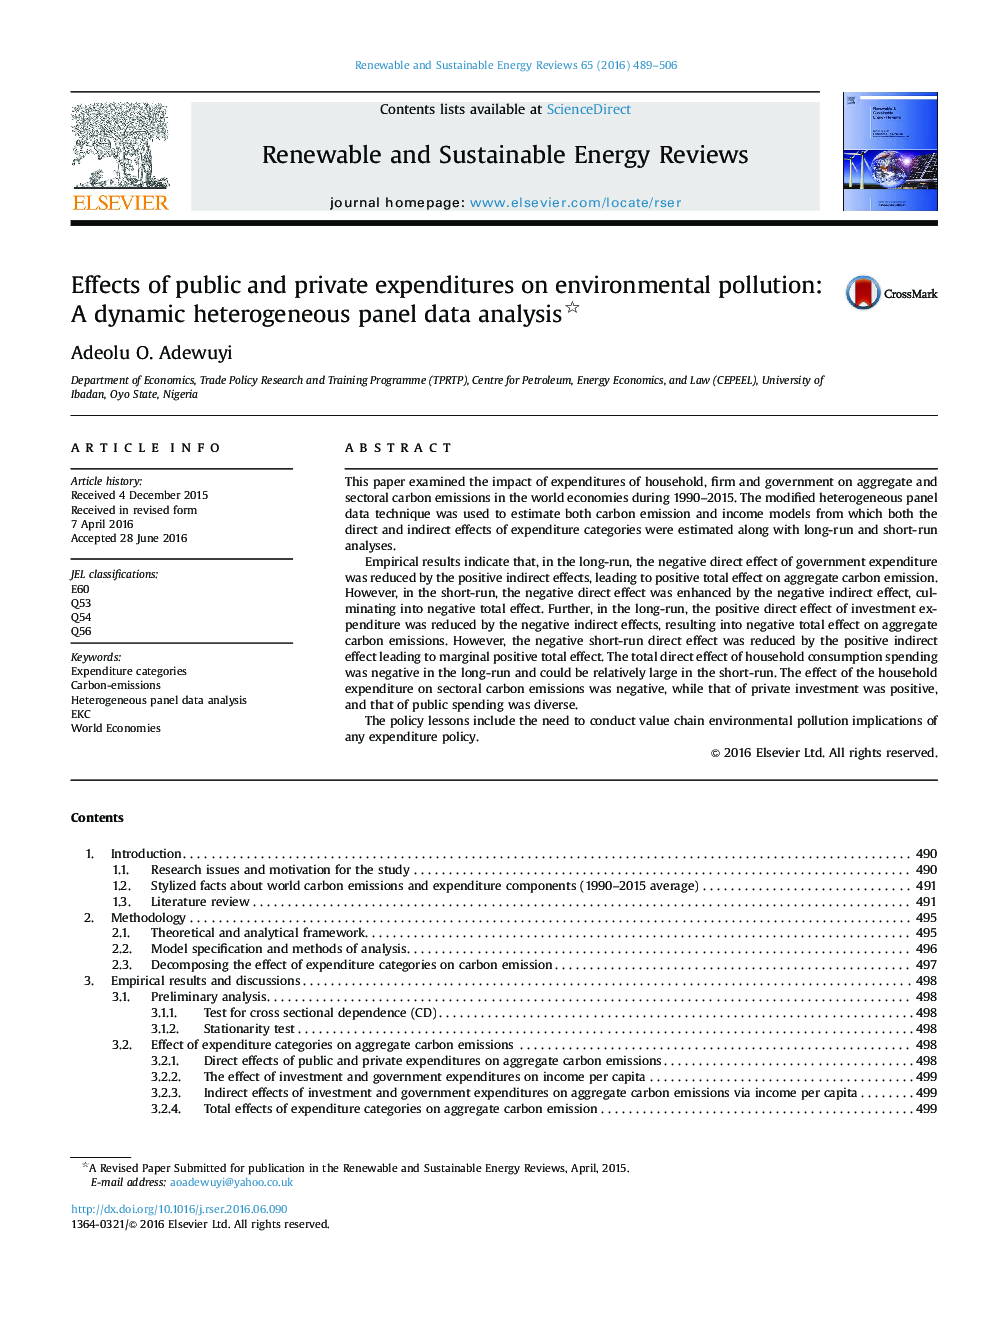 تأثیرات هزینه های عمومی و خصوصی بر آلودگی محیط زیست: تجزیه و تحلیل اطلاعات پانل ناهمگن پانل 